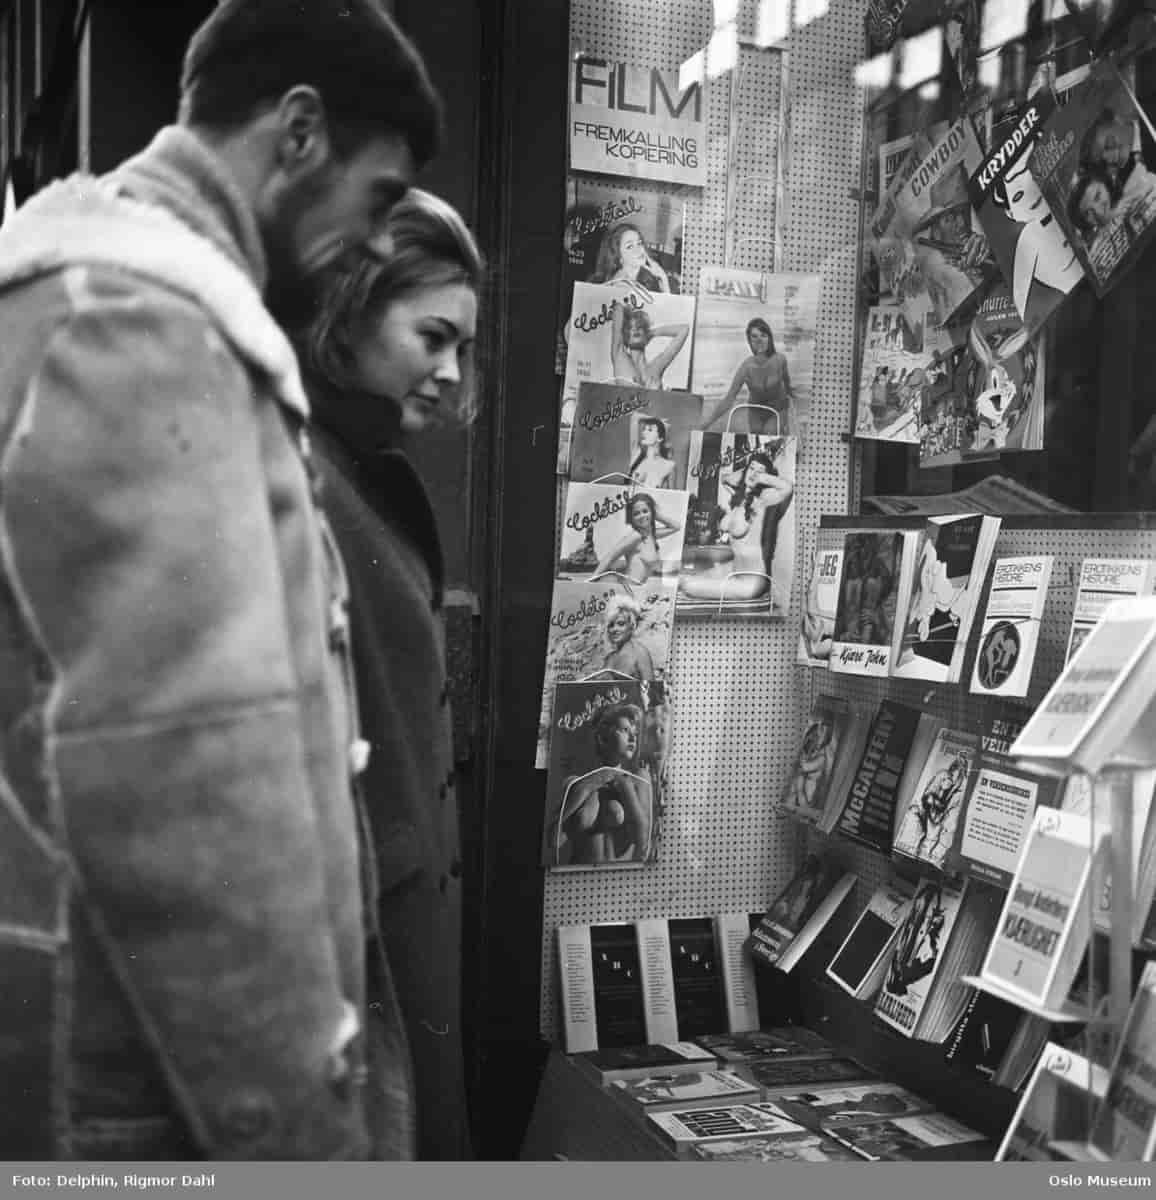 Mann og kvinne ser på vindusutstilling med erotiske blader i Oslo, 1966